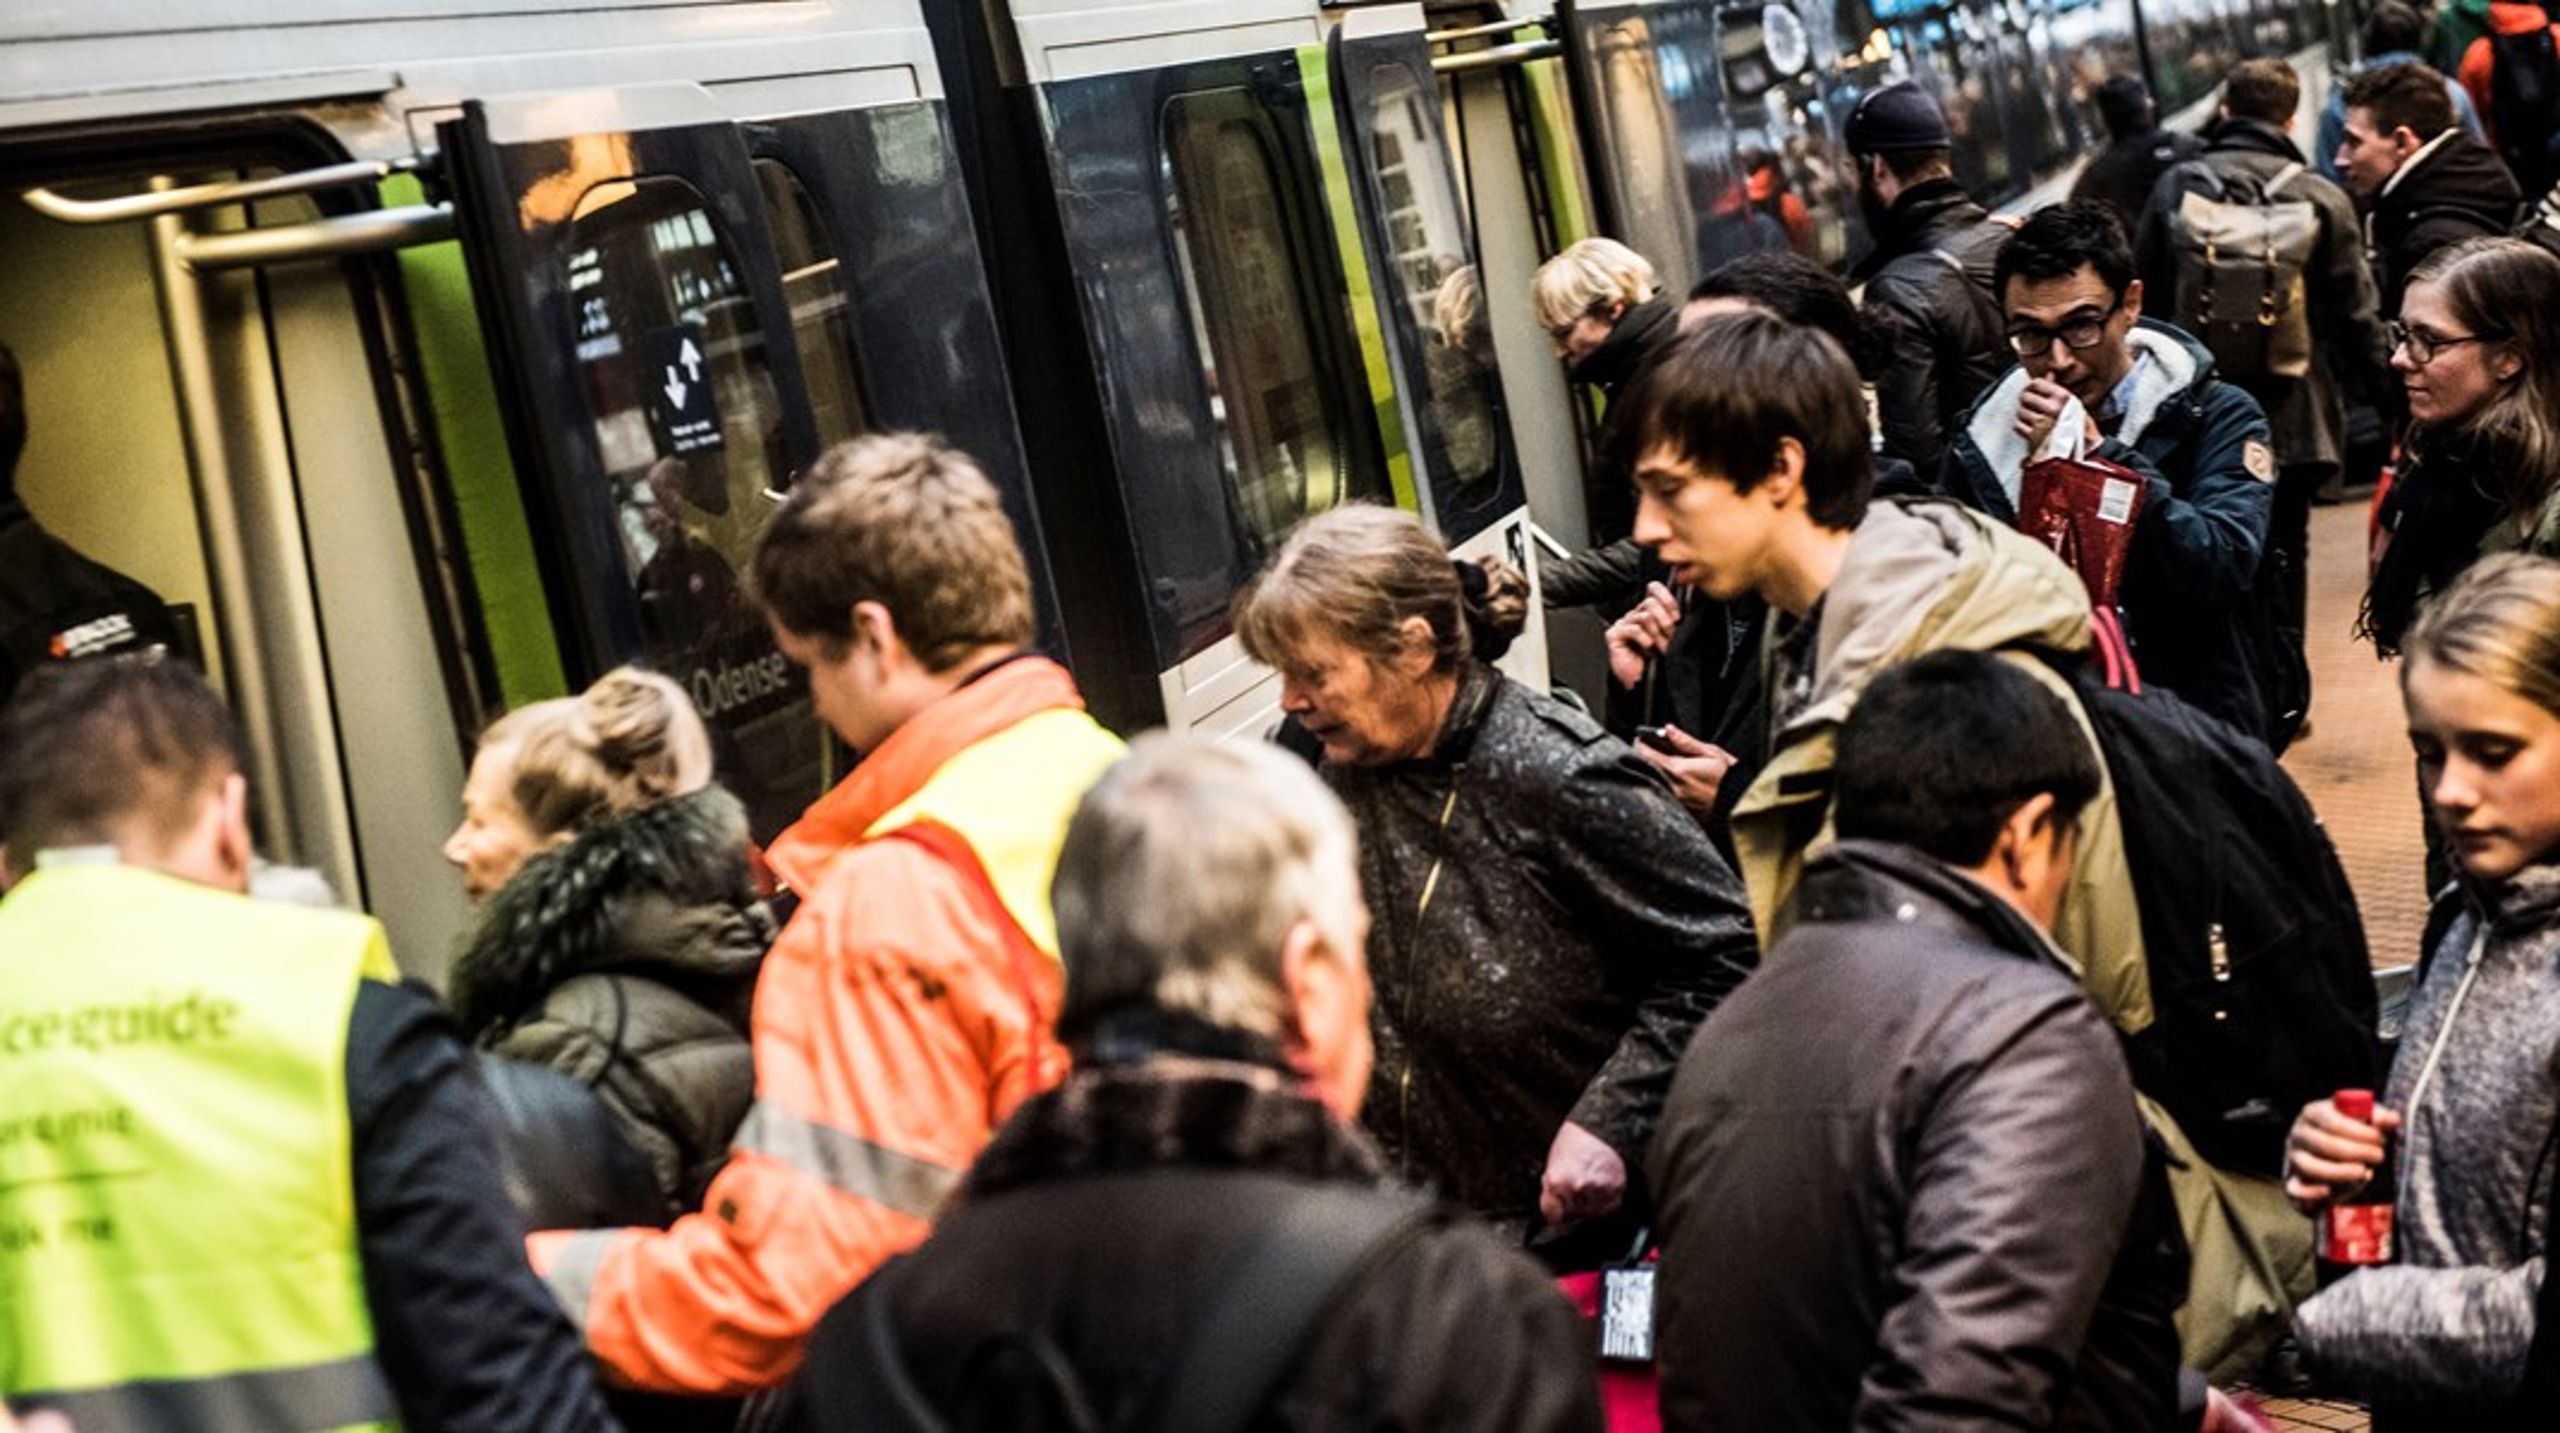 Otte ud af ti danskere vil gøre større brug af kollektiv transport, hvis der var lavere priser, kortere rejsetider, flere afgange og større pålidelighed, lyder en undersøgelse fra Forbrugerrådet Tænk.